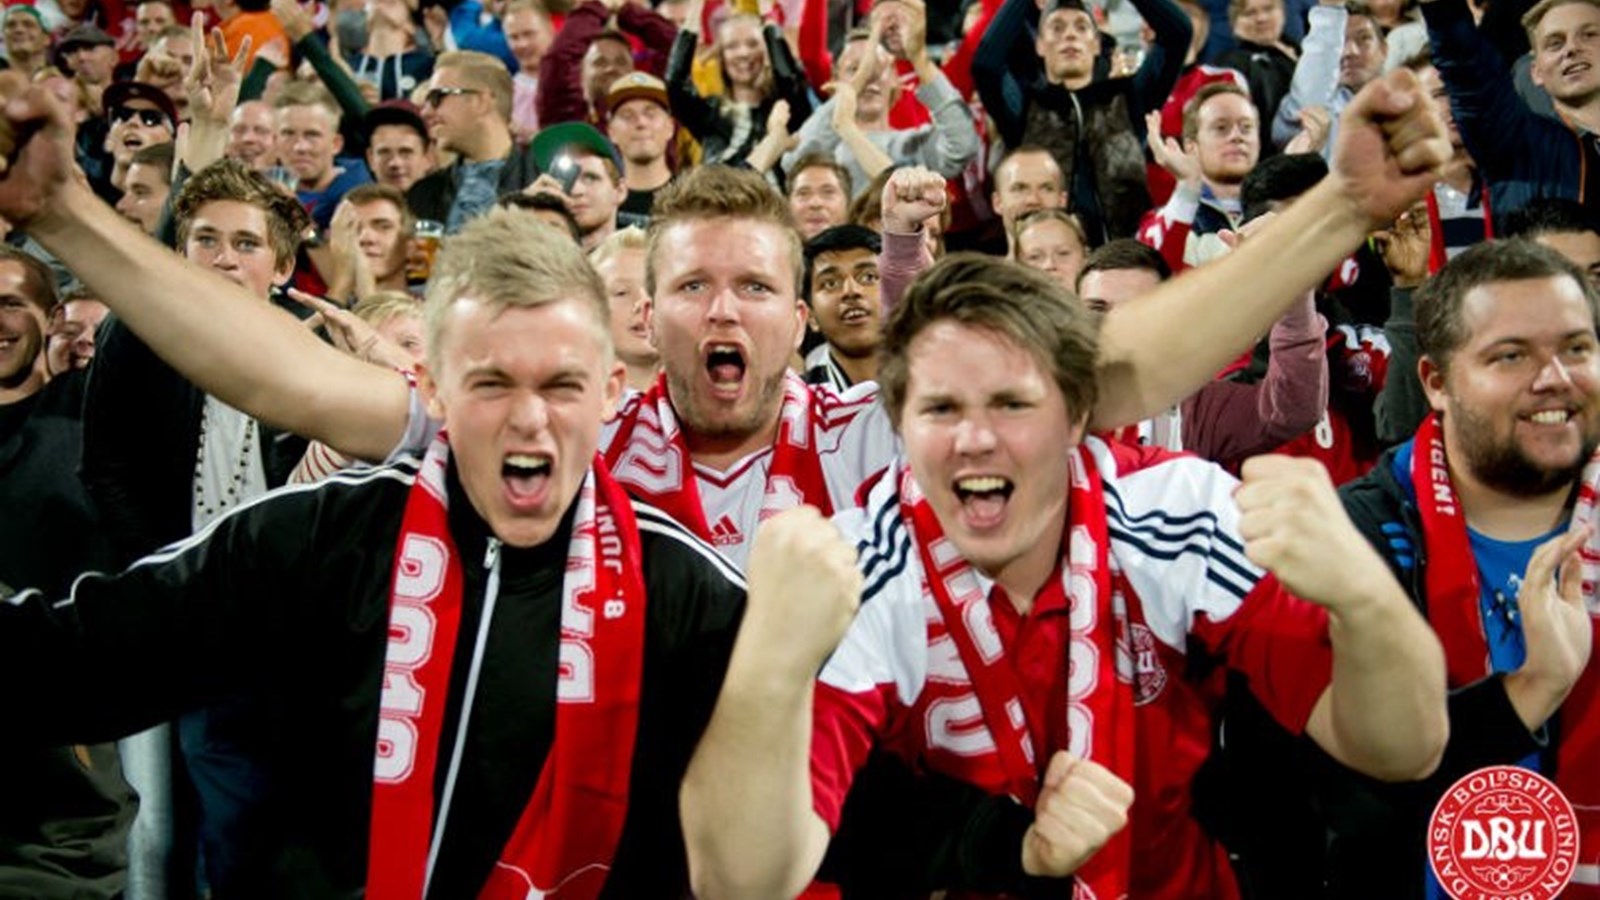 Kronik: Dansk fodbold er en del af noget større